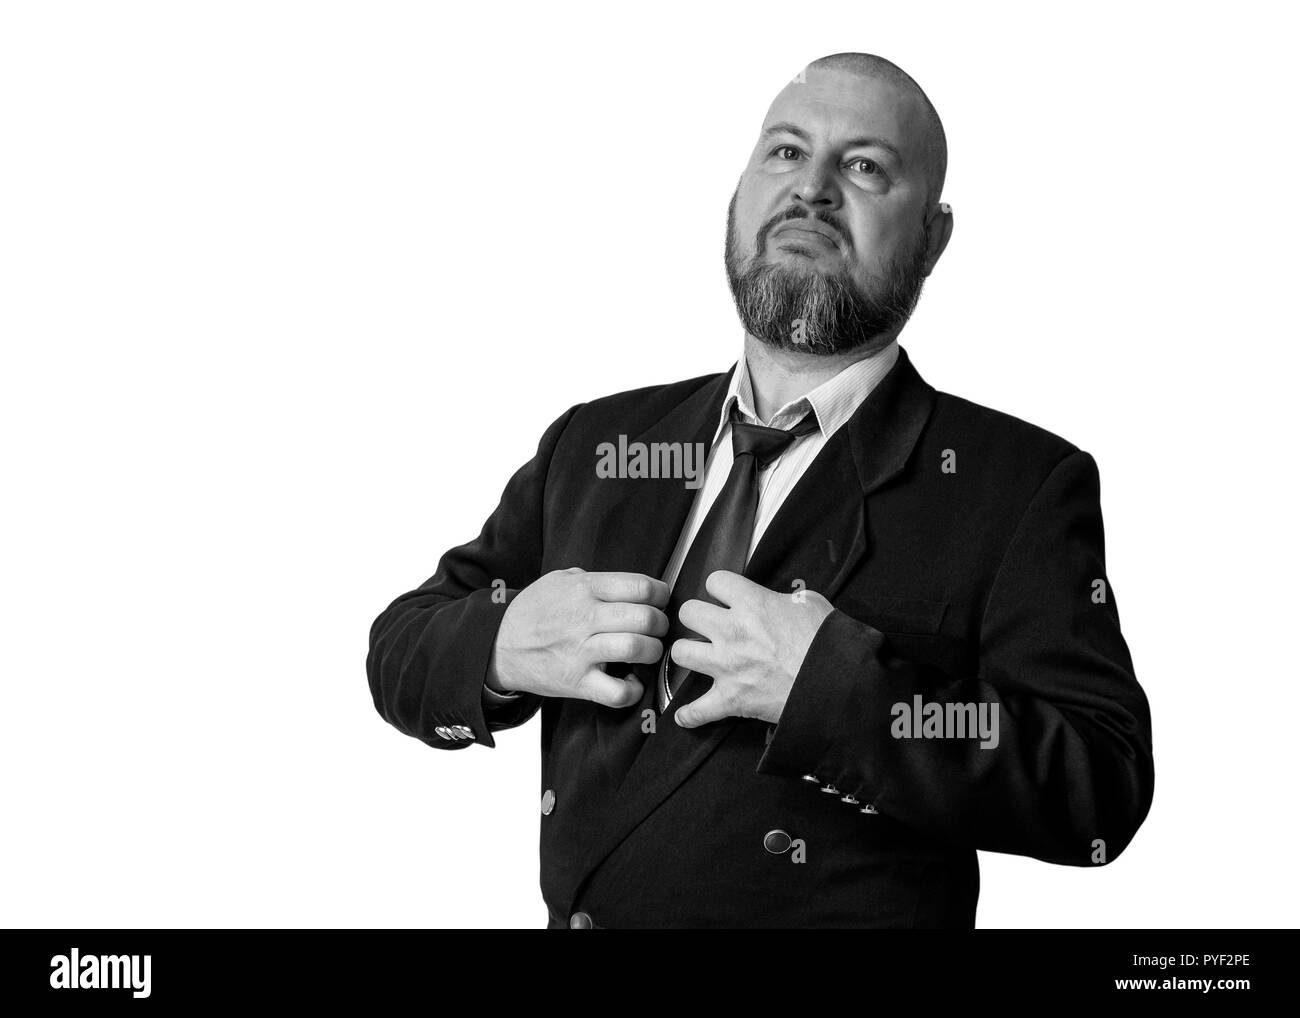 L'homme d'un regard fier et hautain dans une veste avec une cravate et une barbe. Photo monochrome. Banque D'Images